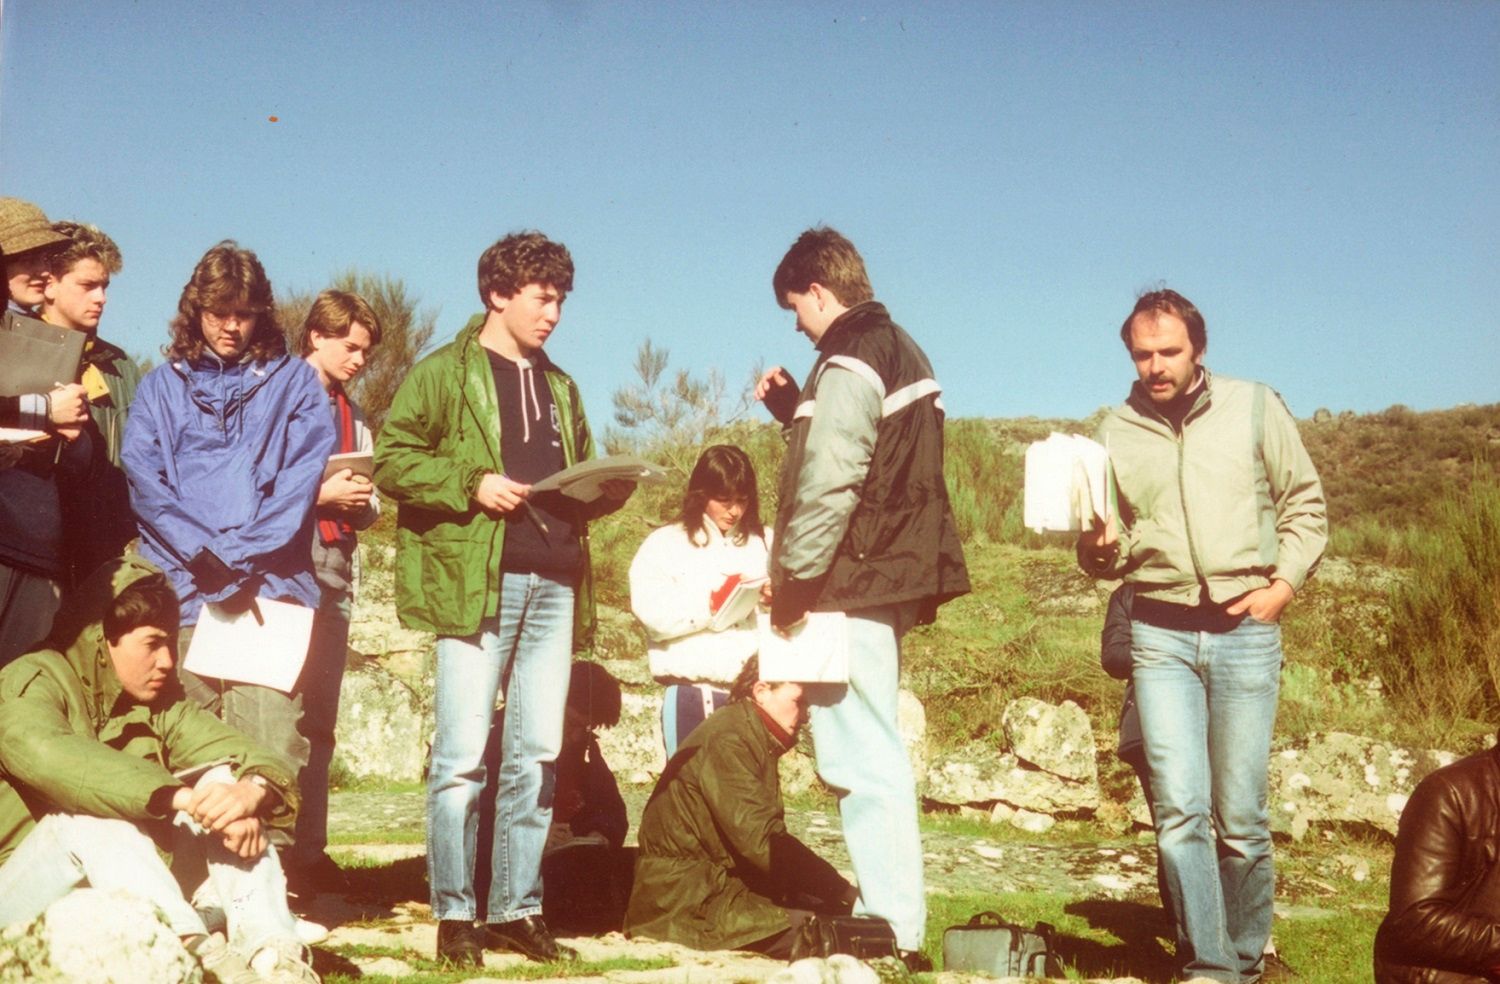 1986 Portugal Field trip - Jim Lewis Image from Linda Drury